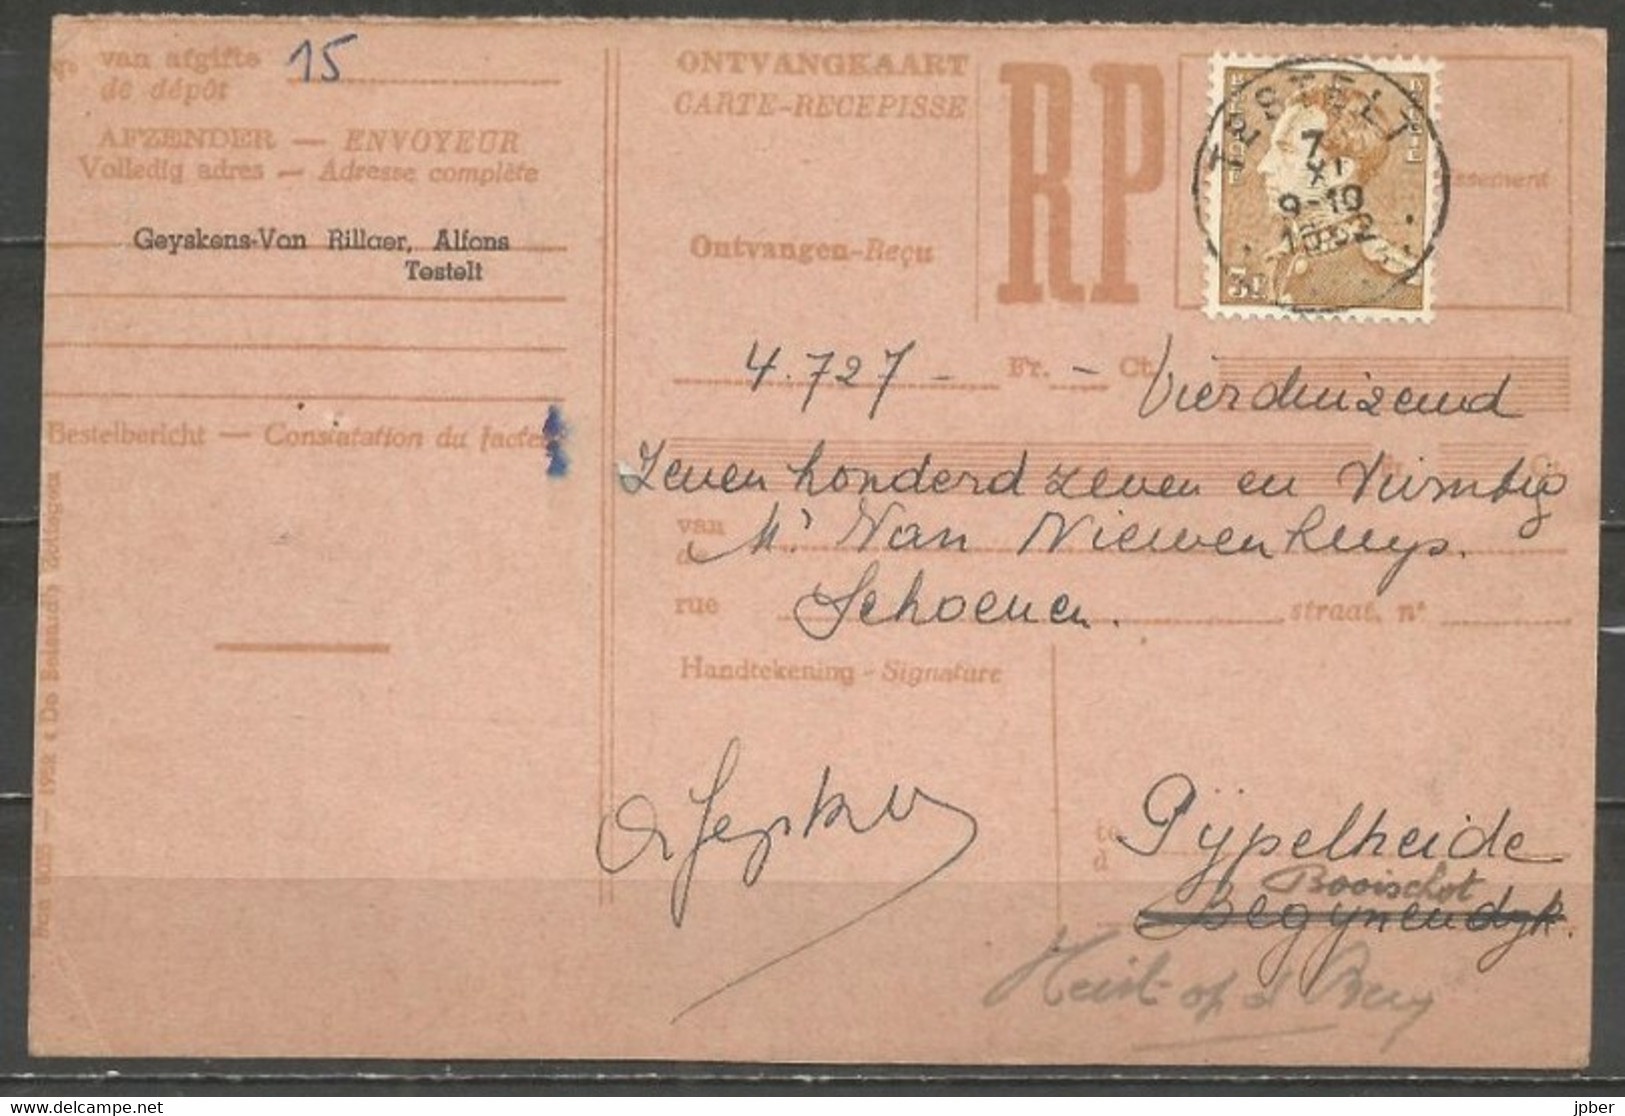 Belgique - Léopold III Poortman - N°847 Obl. TESTELT Sur Carte - 1936-51 Poortman